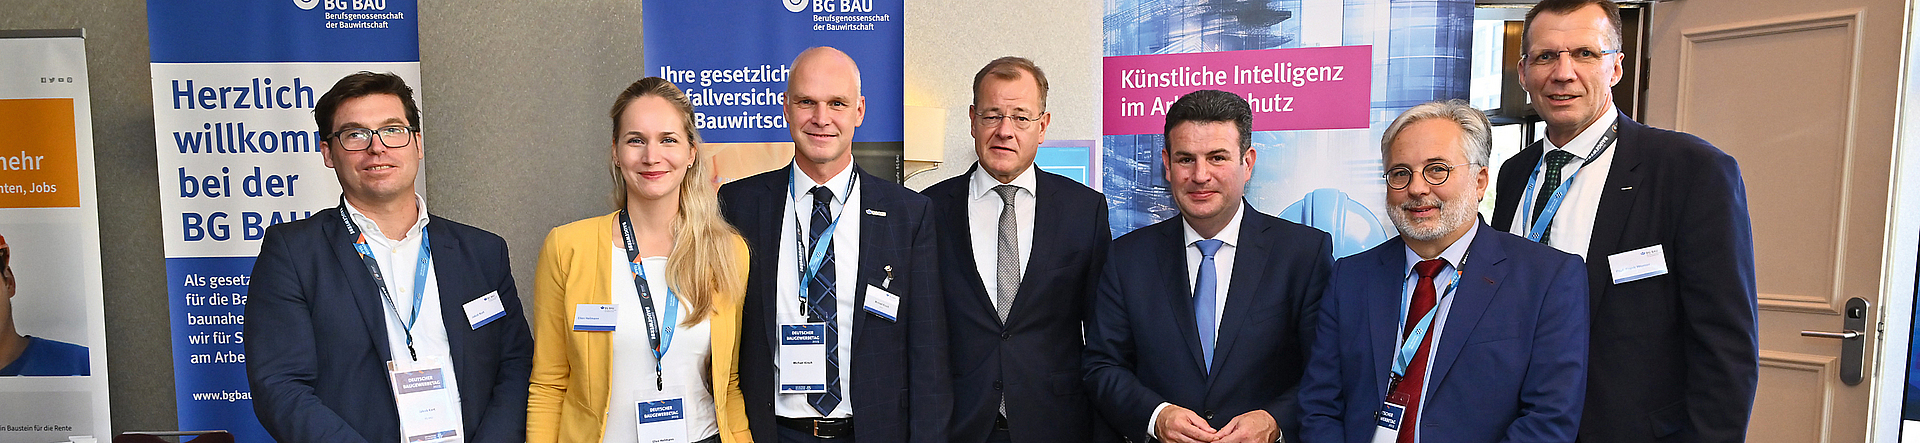 Hubertus Heil (3. v. r.) MdB, Bundesminister für Arbeit und Soziales, und Felix Pakleppa (4. v. r.), Hauptgeschäftsführer Zentralverband Deutsches Baugewerbe, informierten sich über das KI-Projekt der BG BAU.